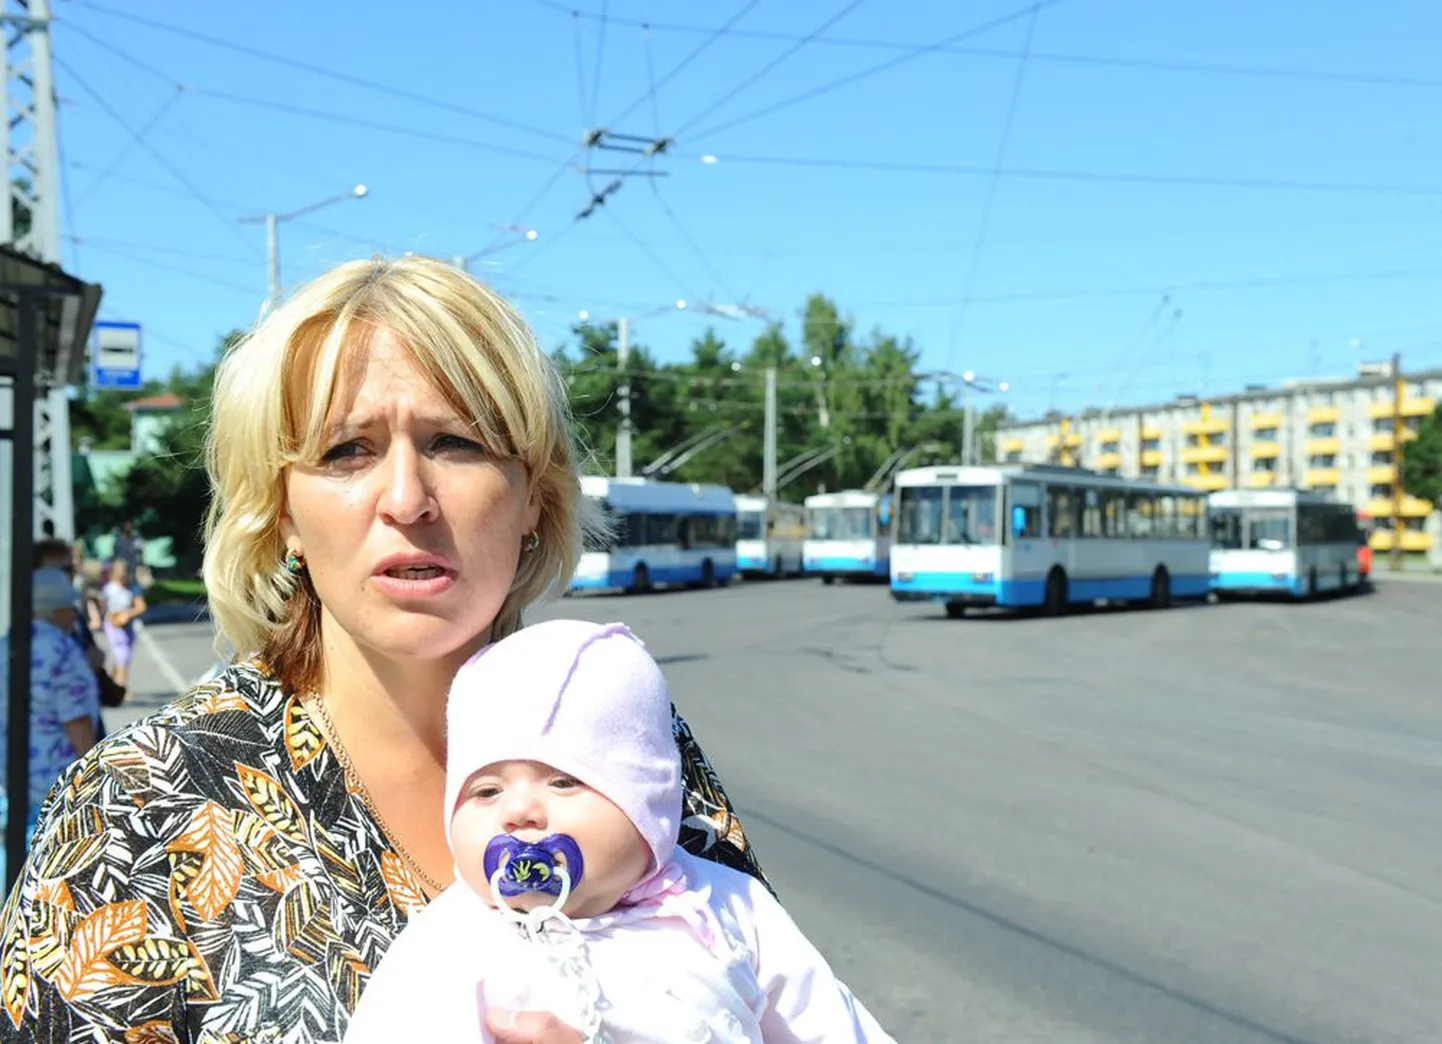 Svetlana Kucur üleeile lapsega Tallinnas Keskuse tänava trollibusside lõpp-peatuses ehk kohas, kus trollijuht ründas teda tänavu 11. mail.